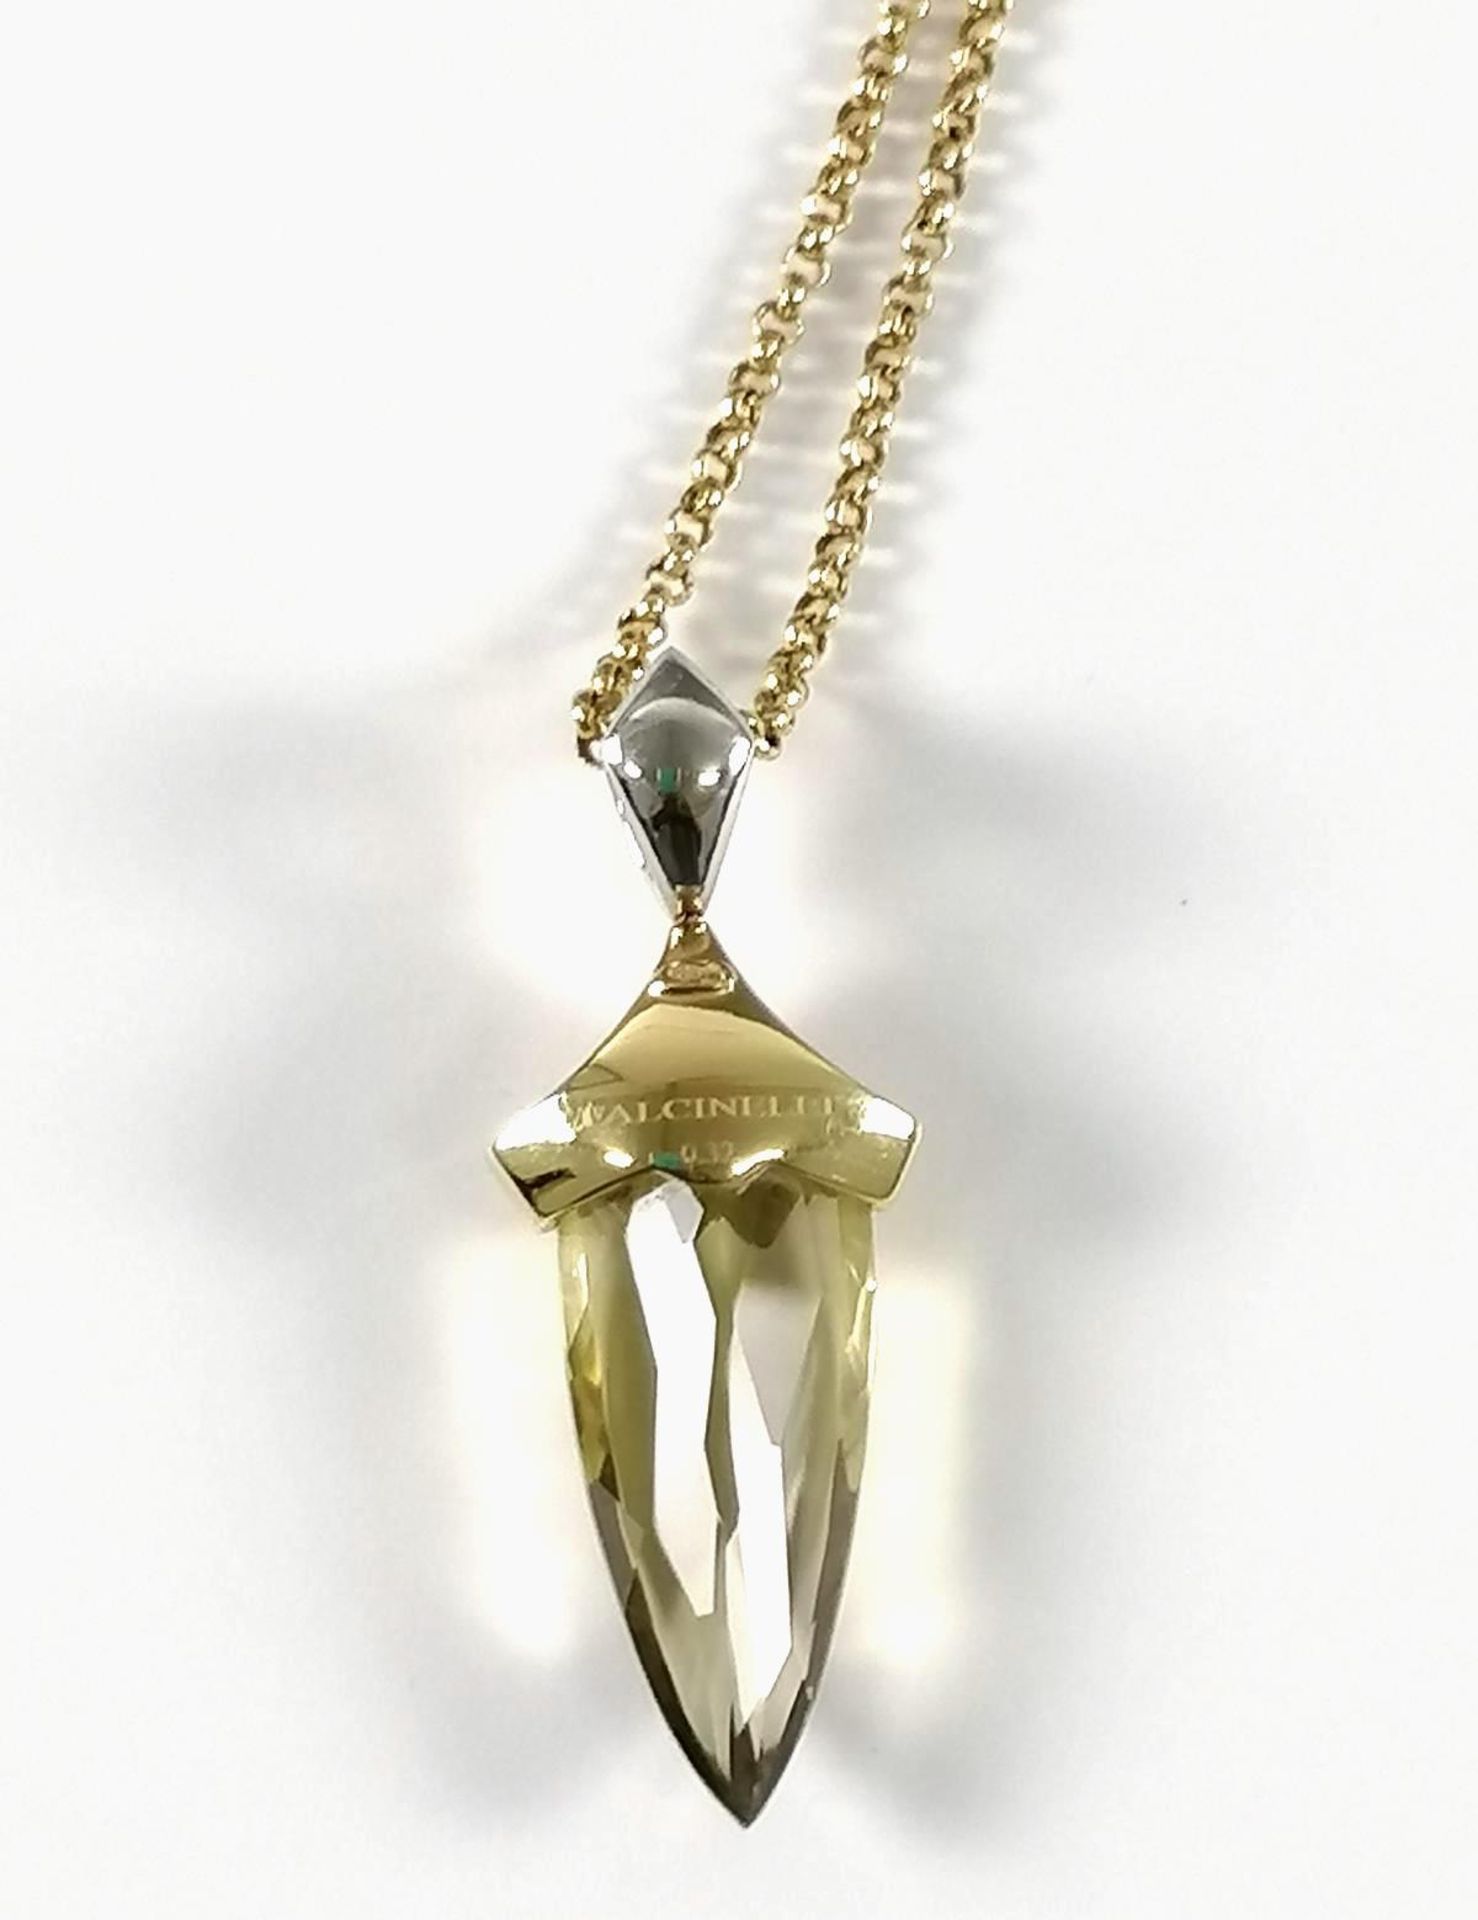 Citrinanhänger mit Diamanten und Halskette aus 18 kt Gelbgold, Falcinelli Design - Image 3 of 3